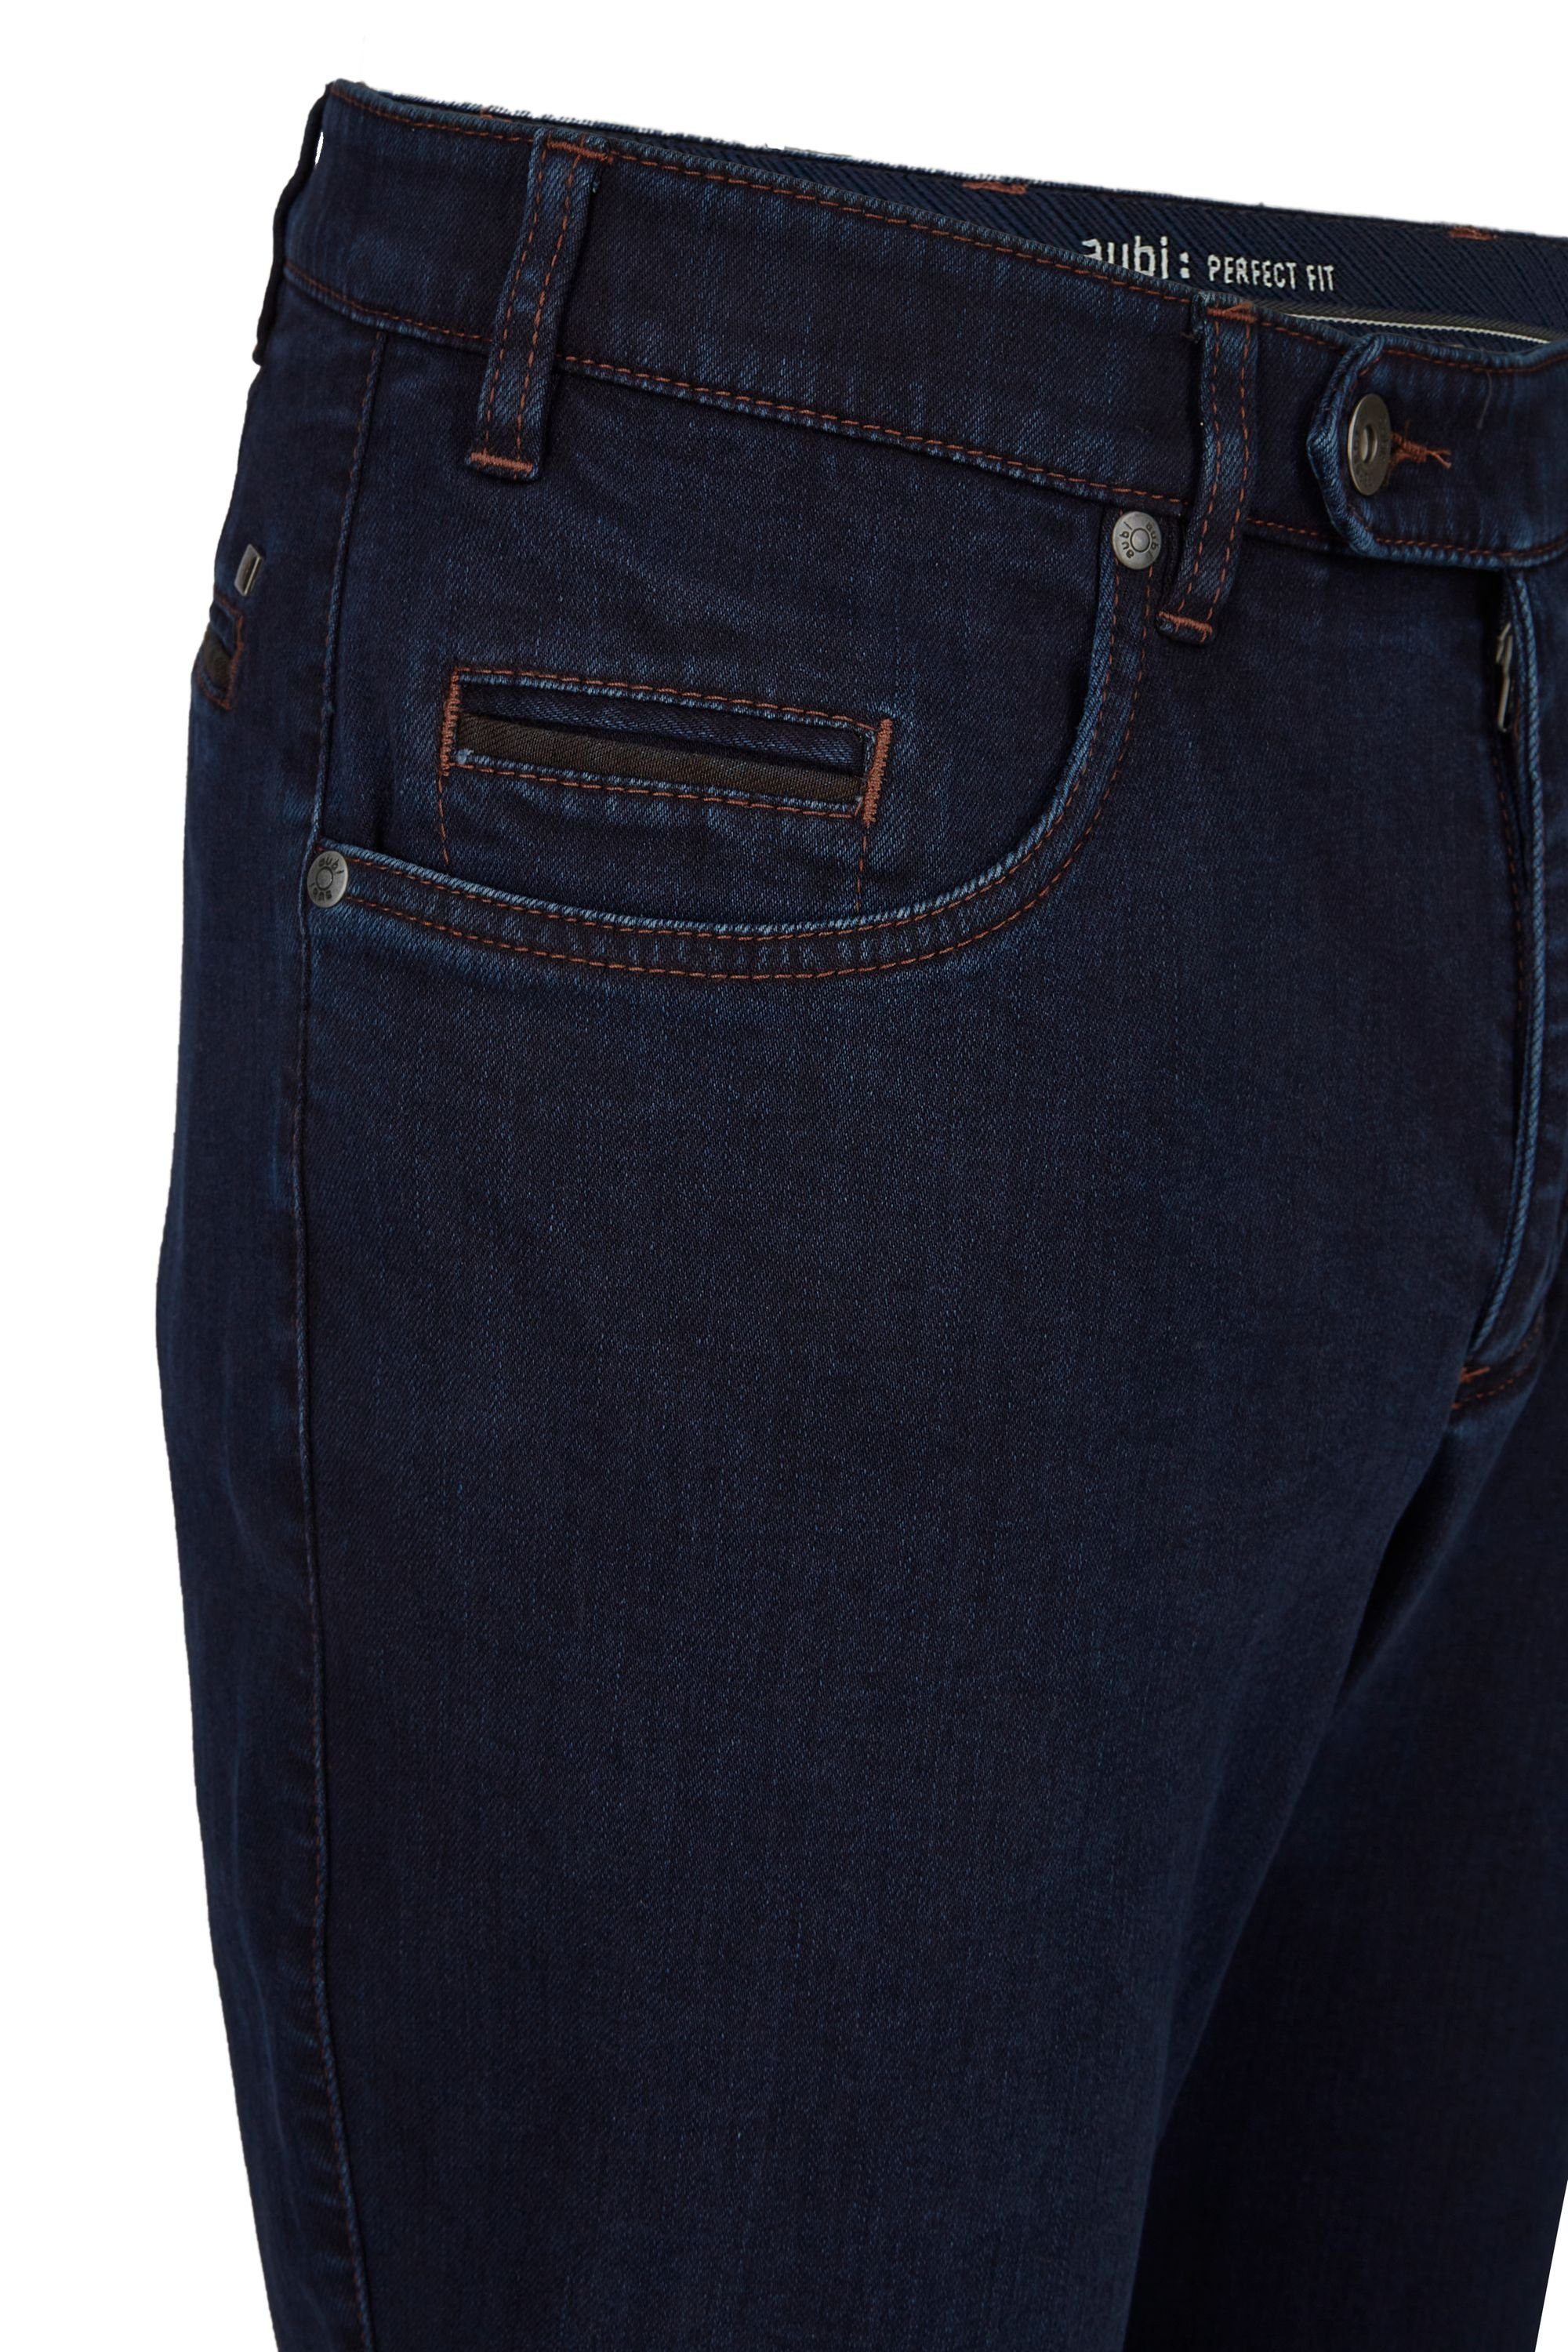 Jeans High Hose aubi: Modell aus Fit 577 Herren Baumwolle Perfect Abseite Flex Stoffhose Stretch aubi